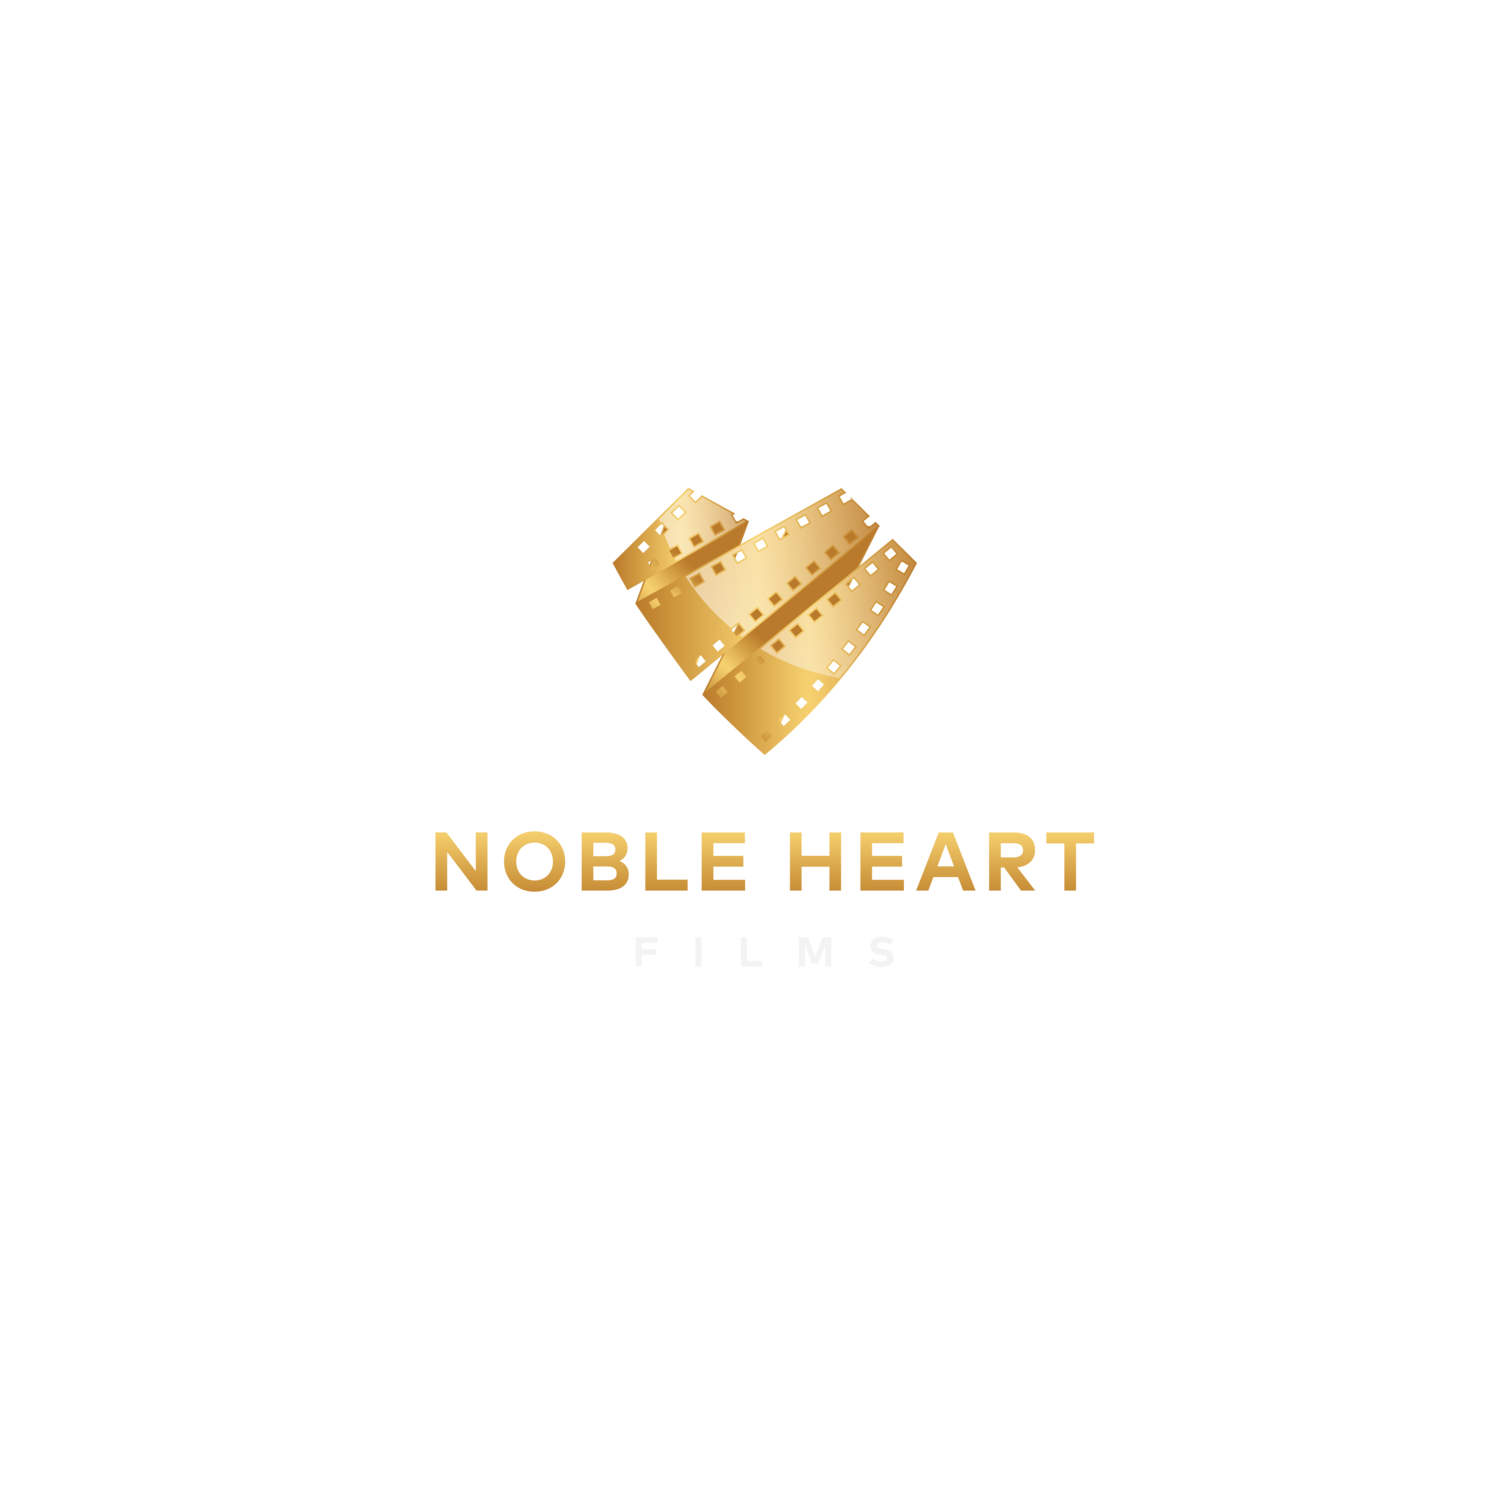 NOBLE HEART FILMS